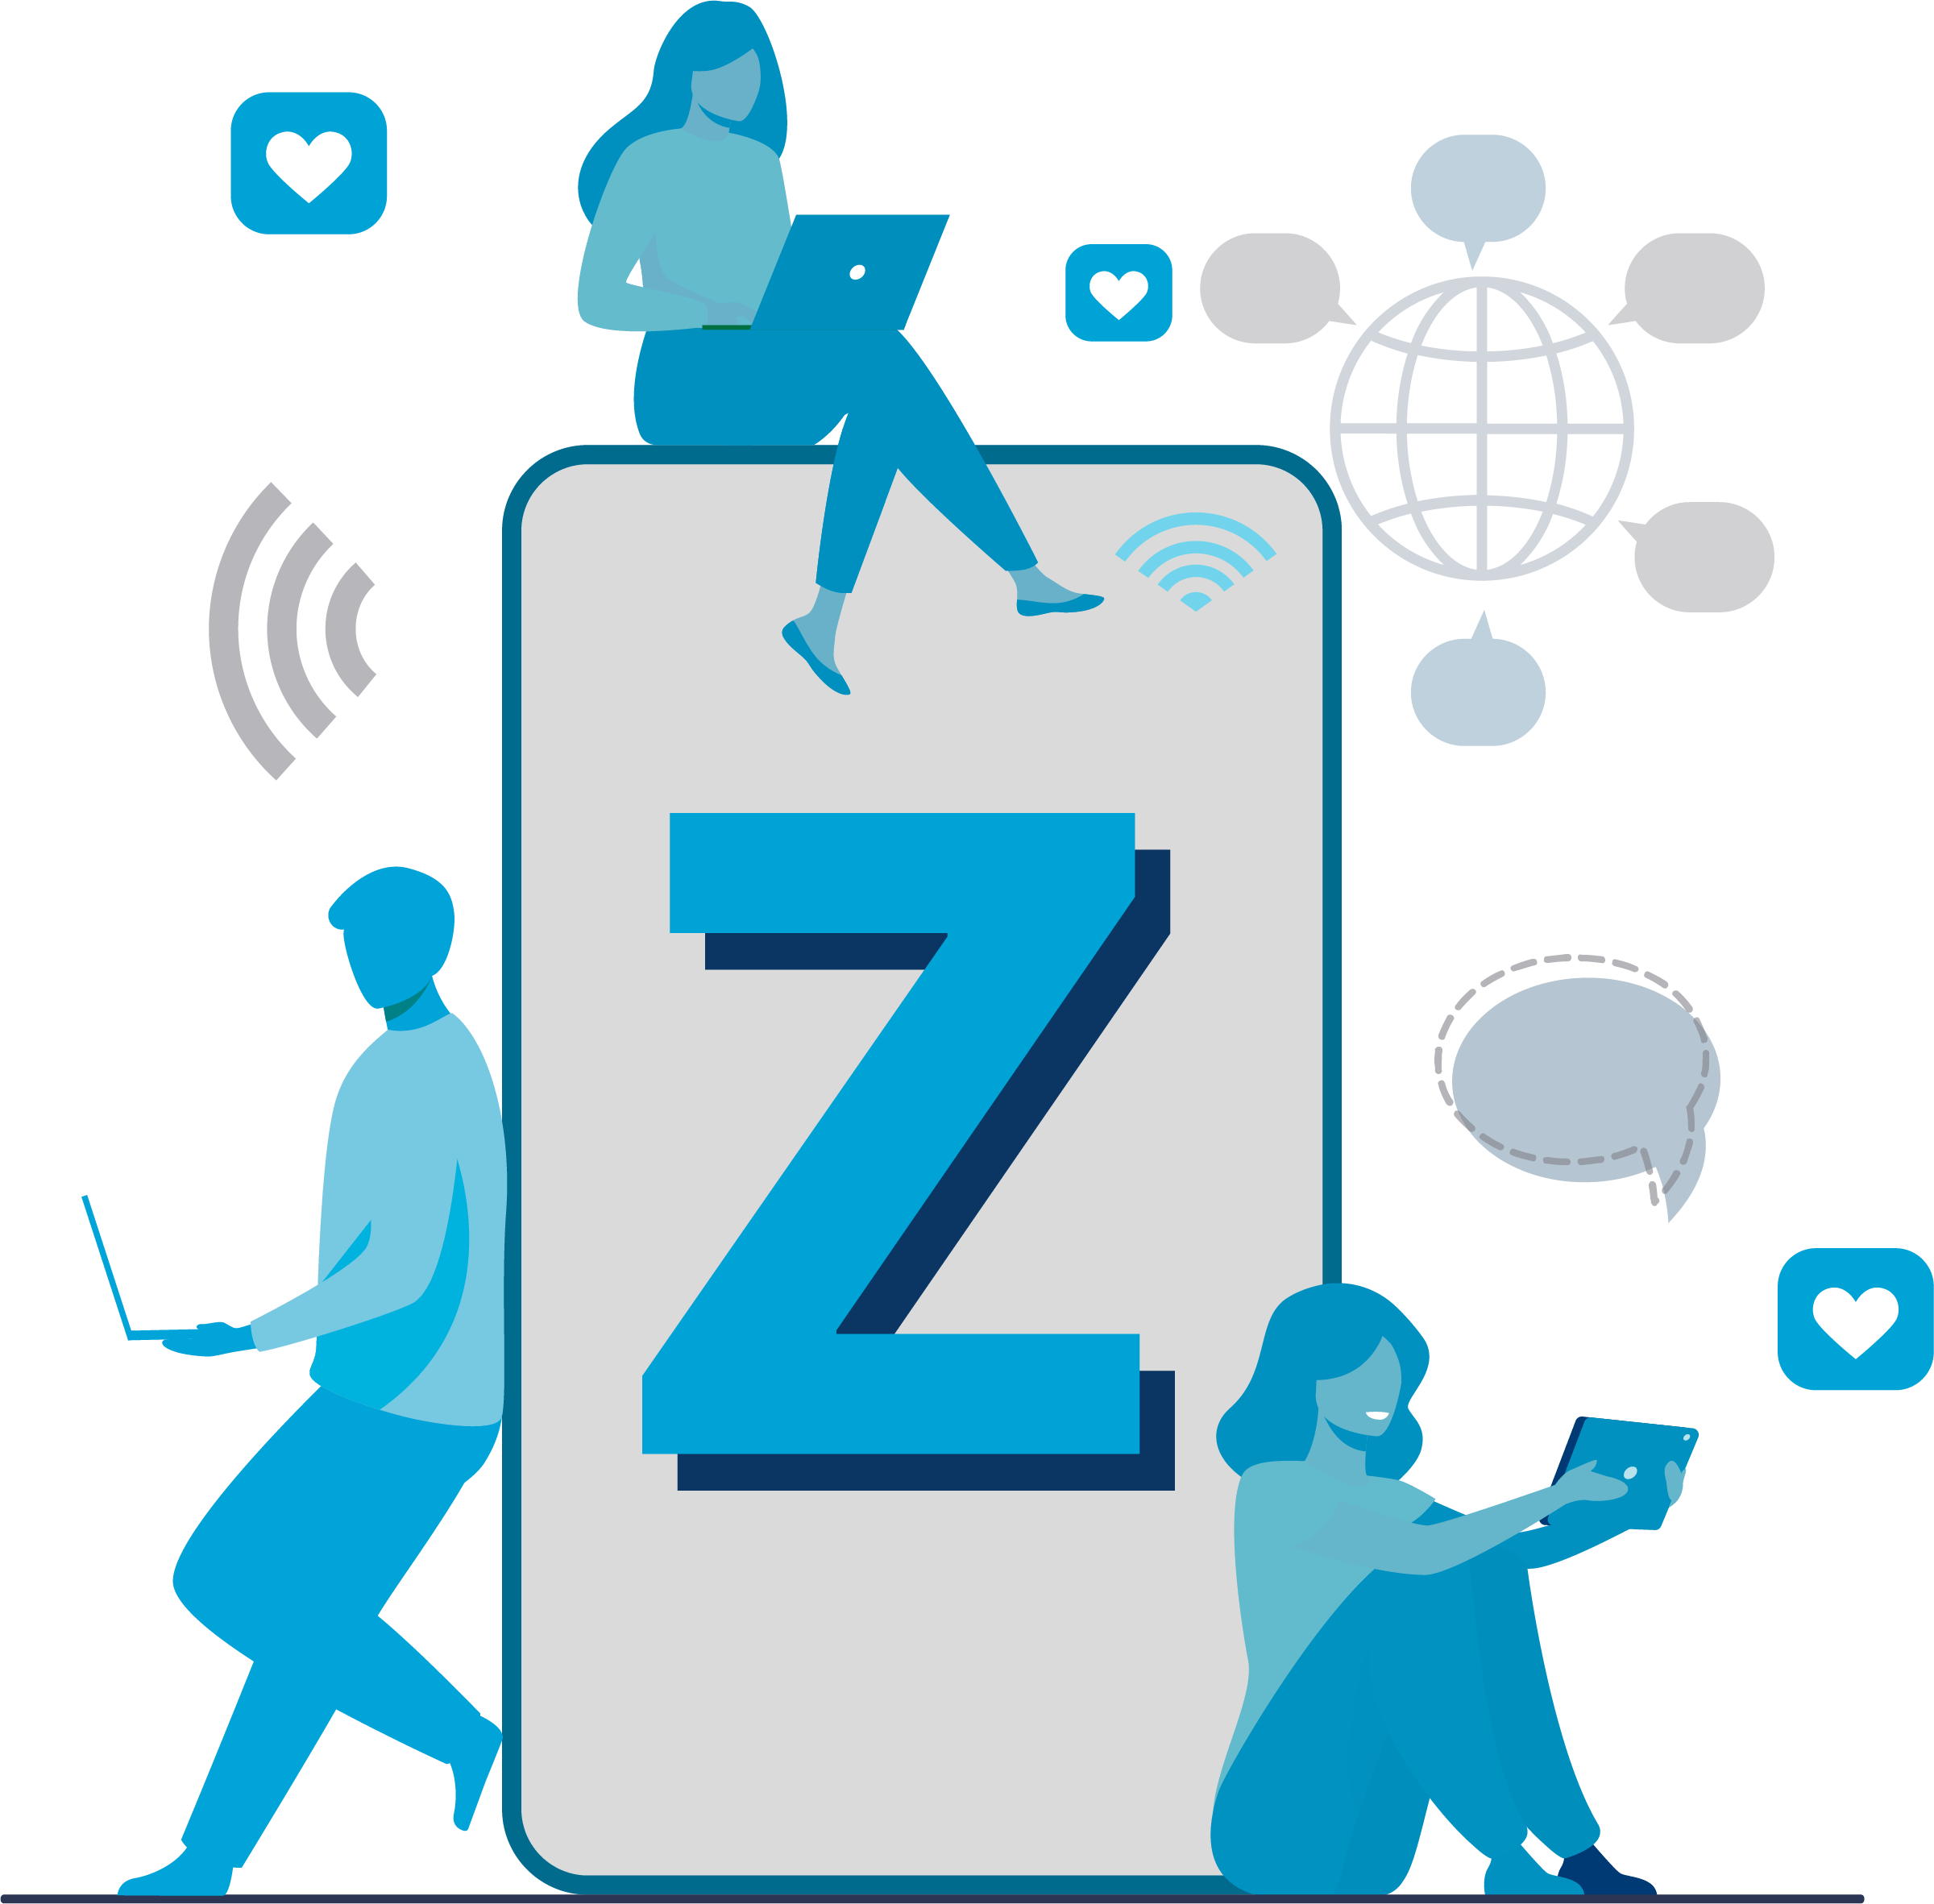 Gen Z CTV users around a smartphone